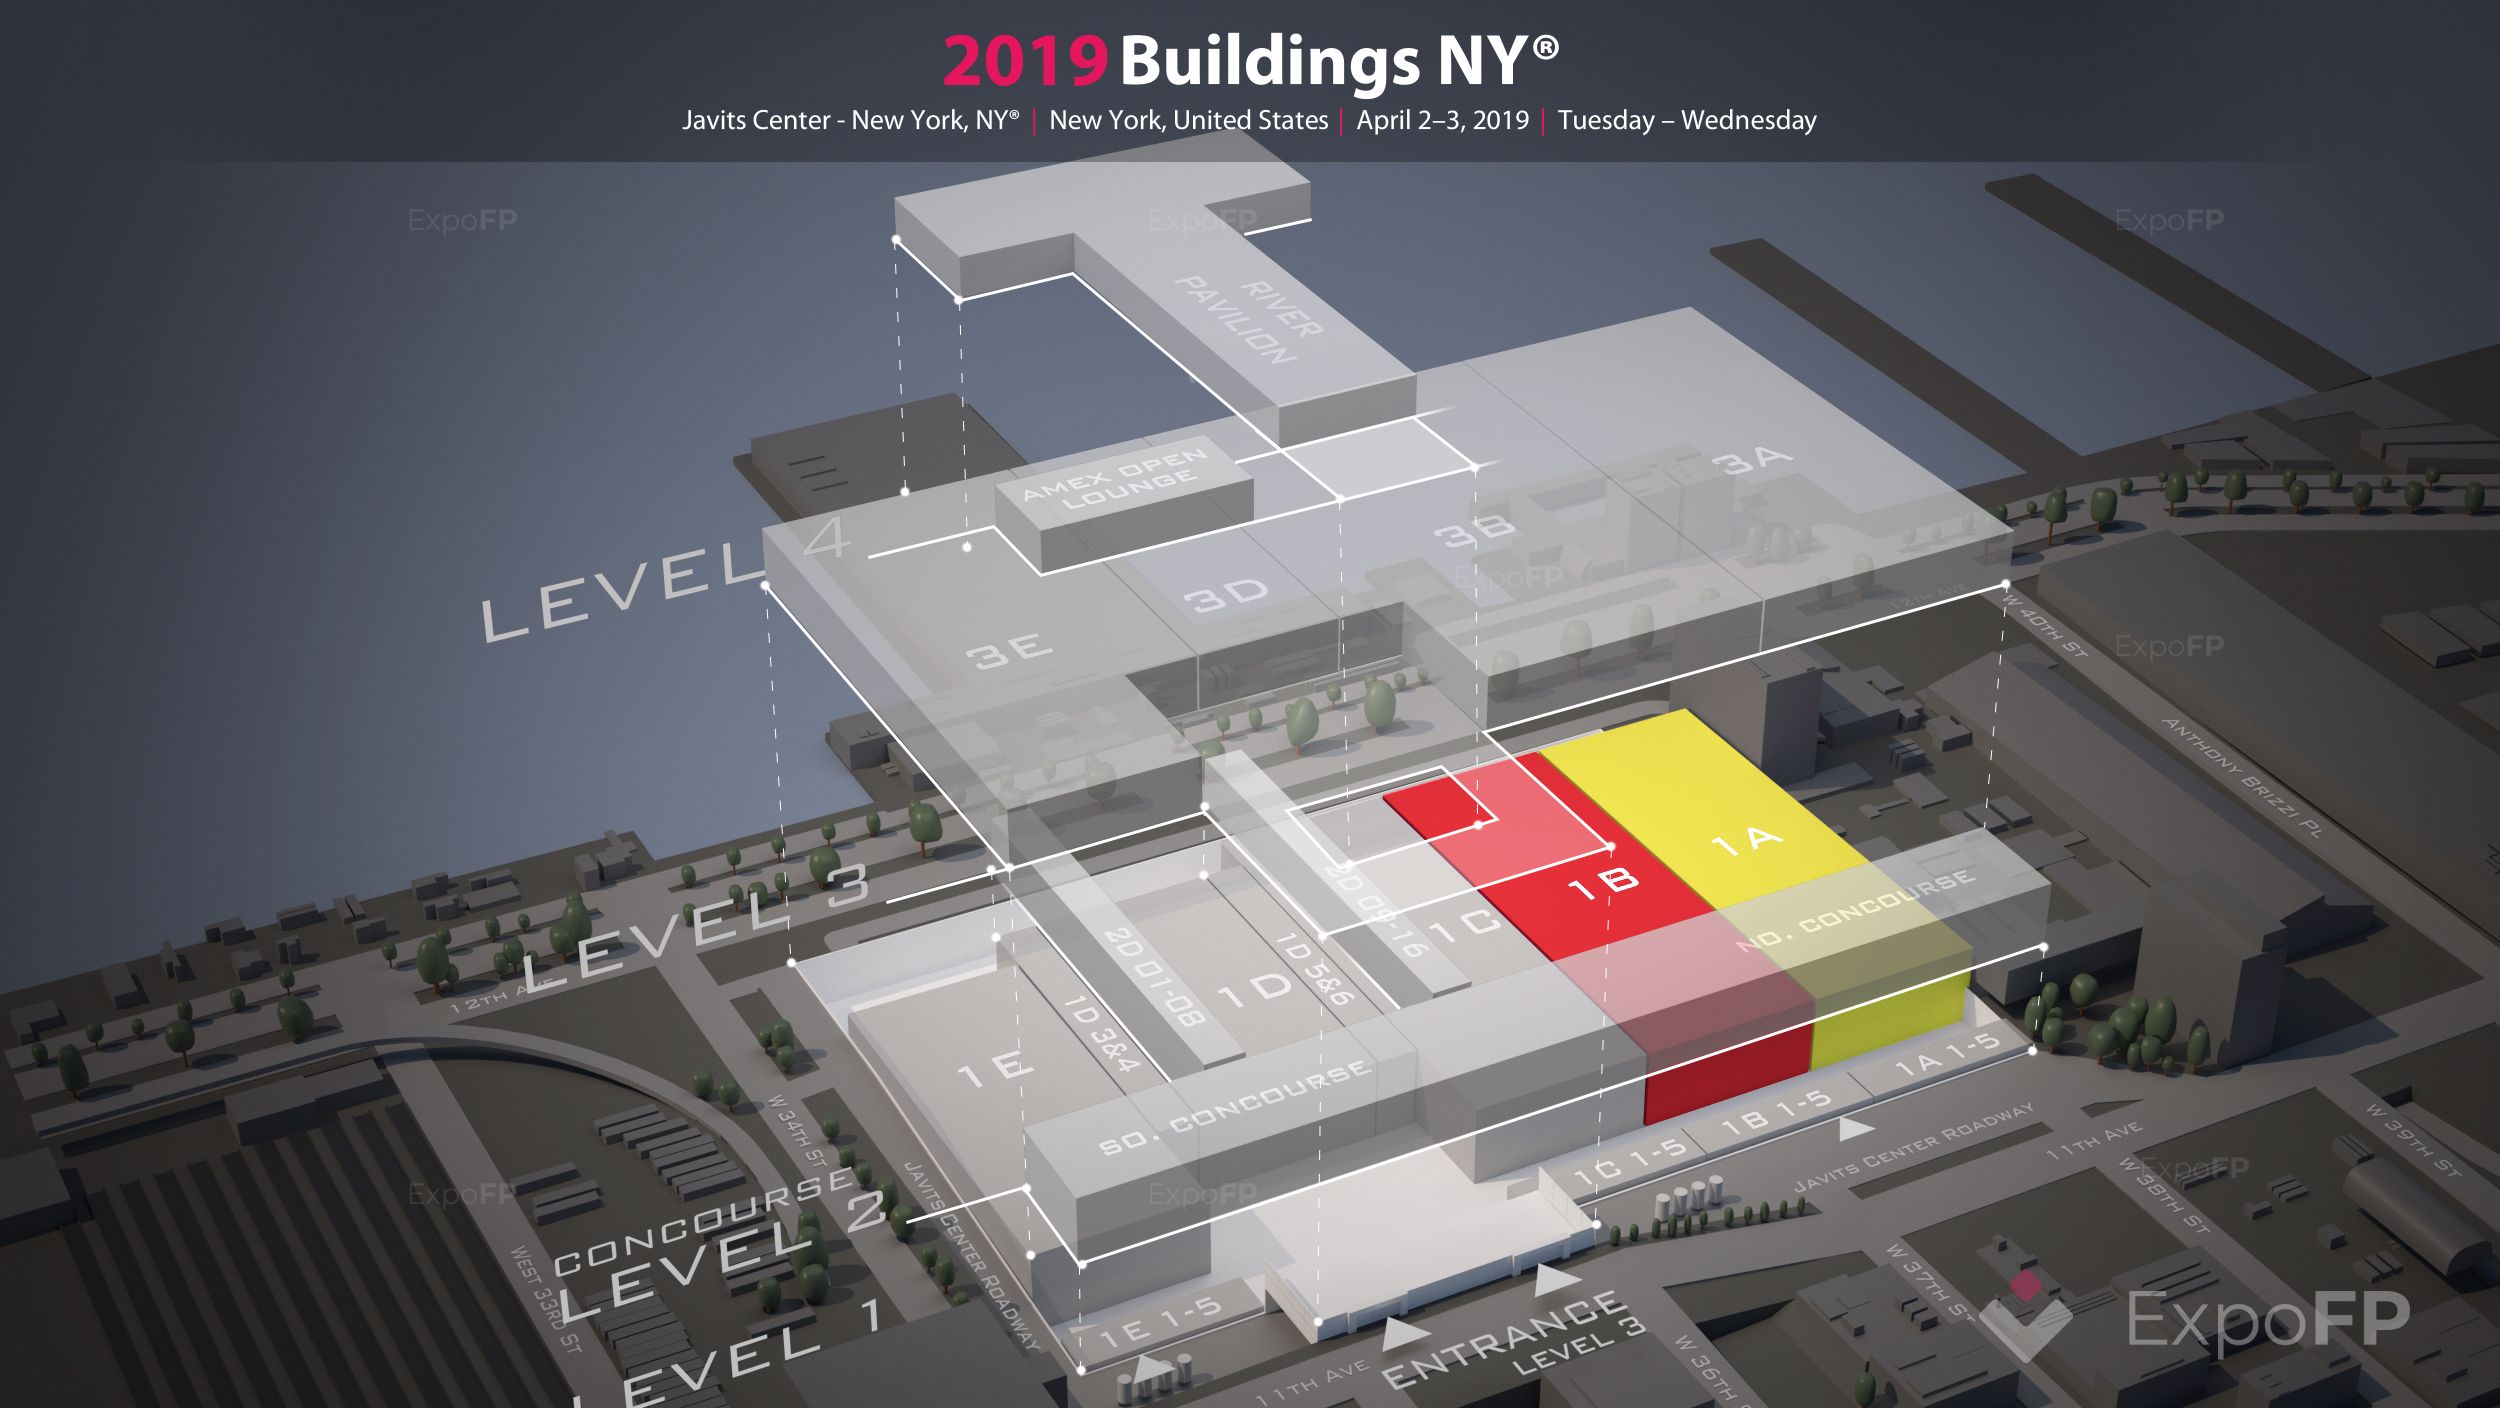 Buildings NY 2019 in Javits Center New York, NY